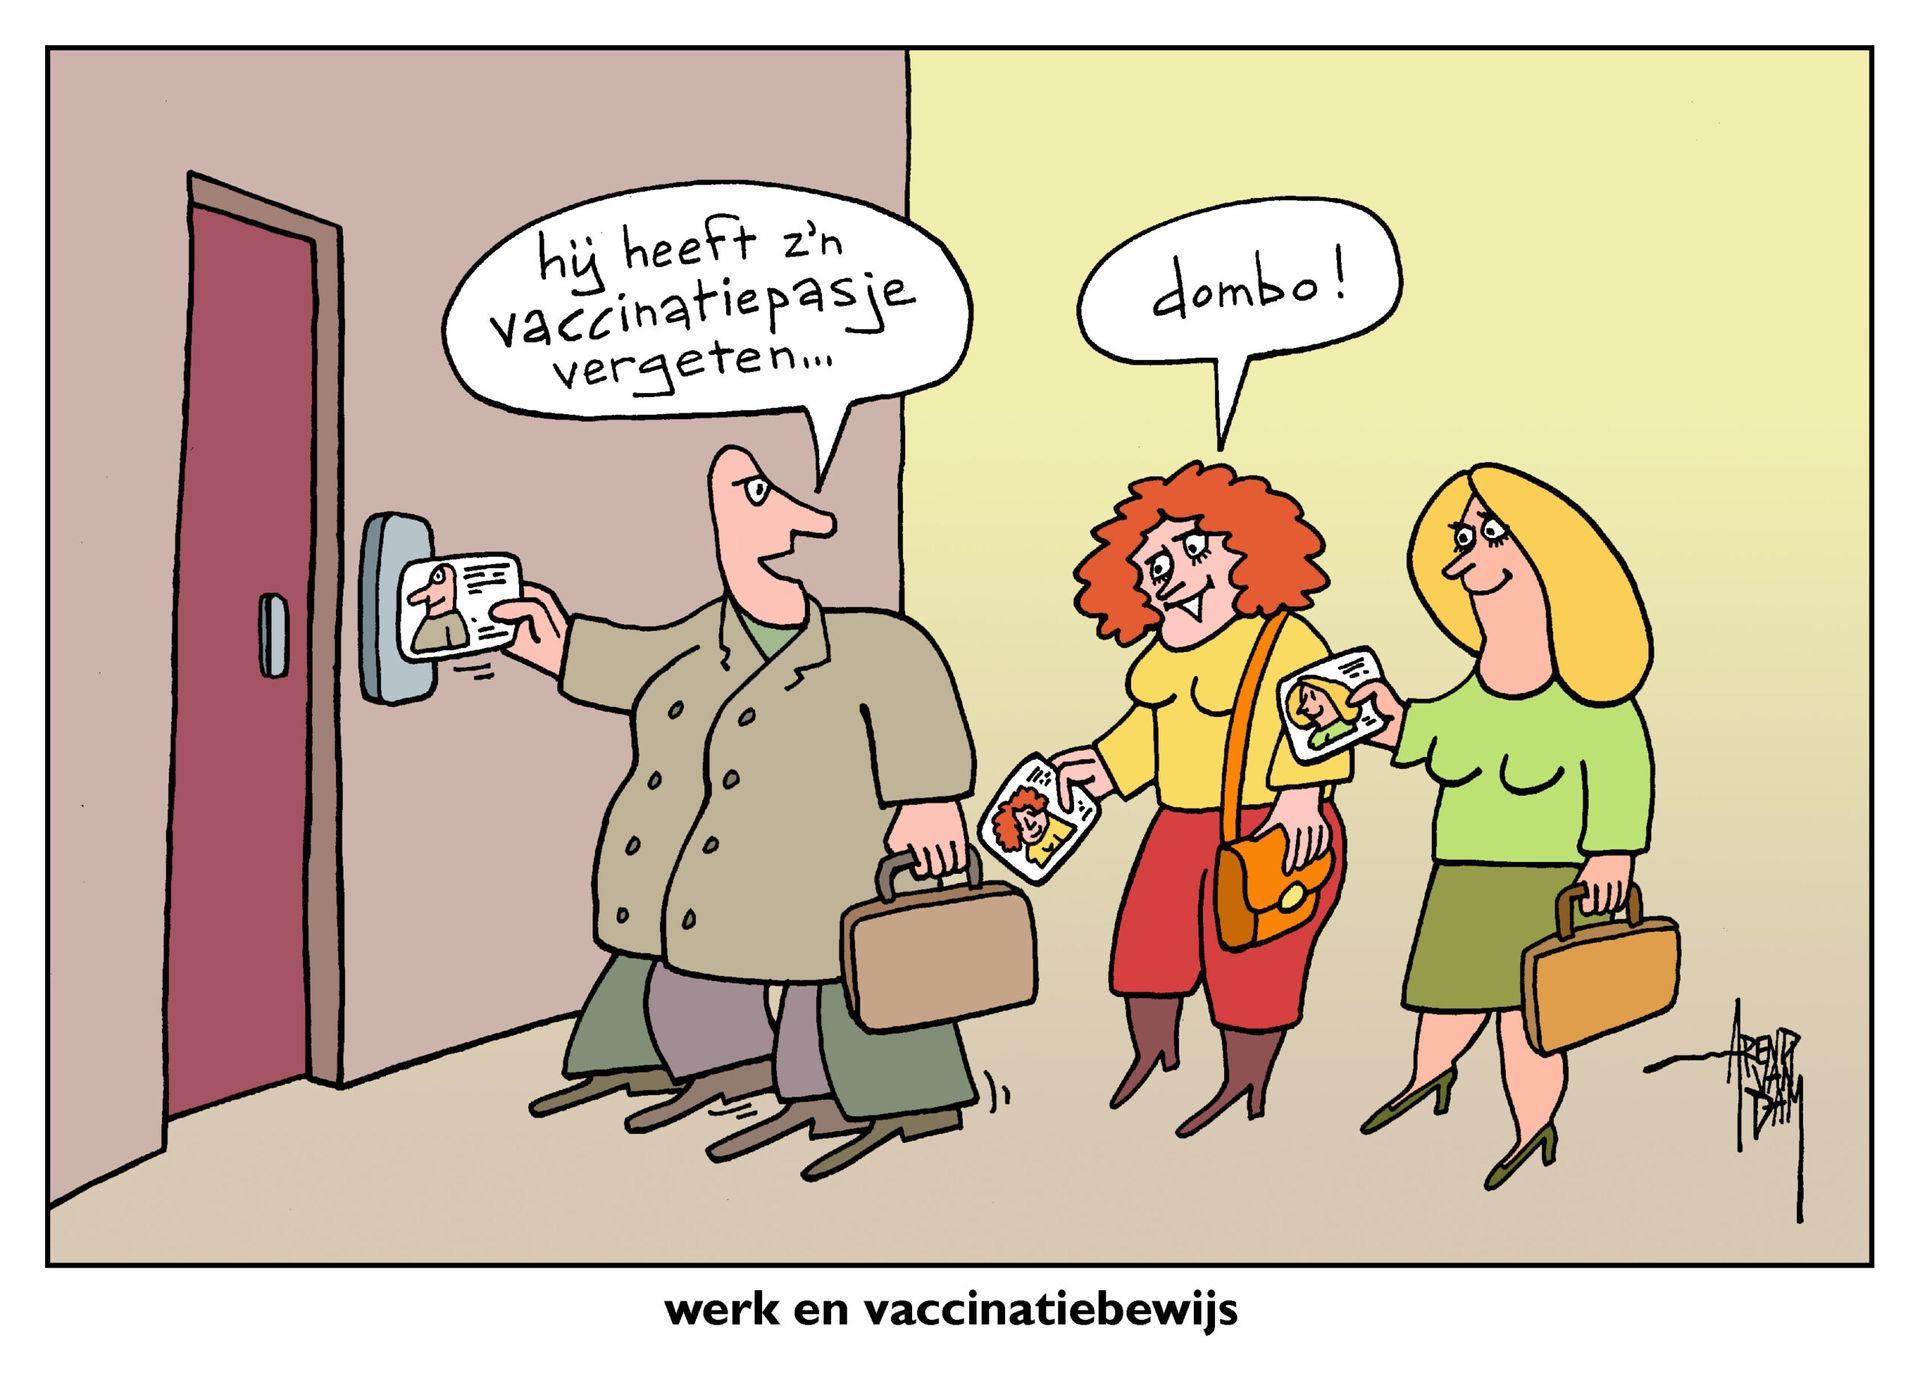 VaccinatiePasjeVergeten